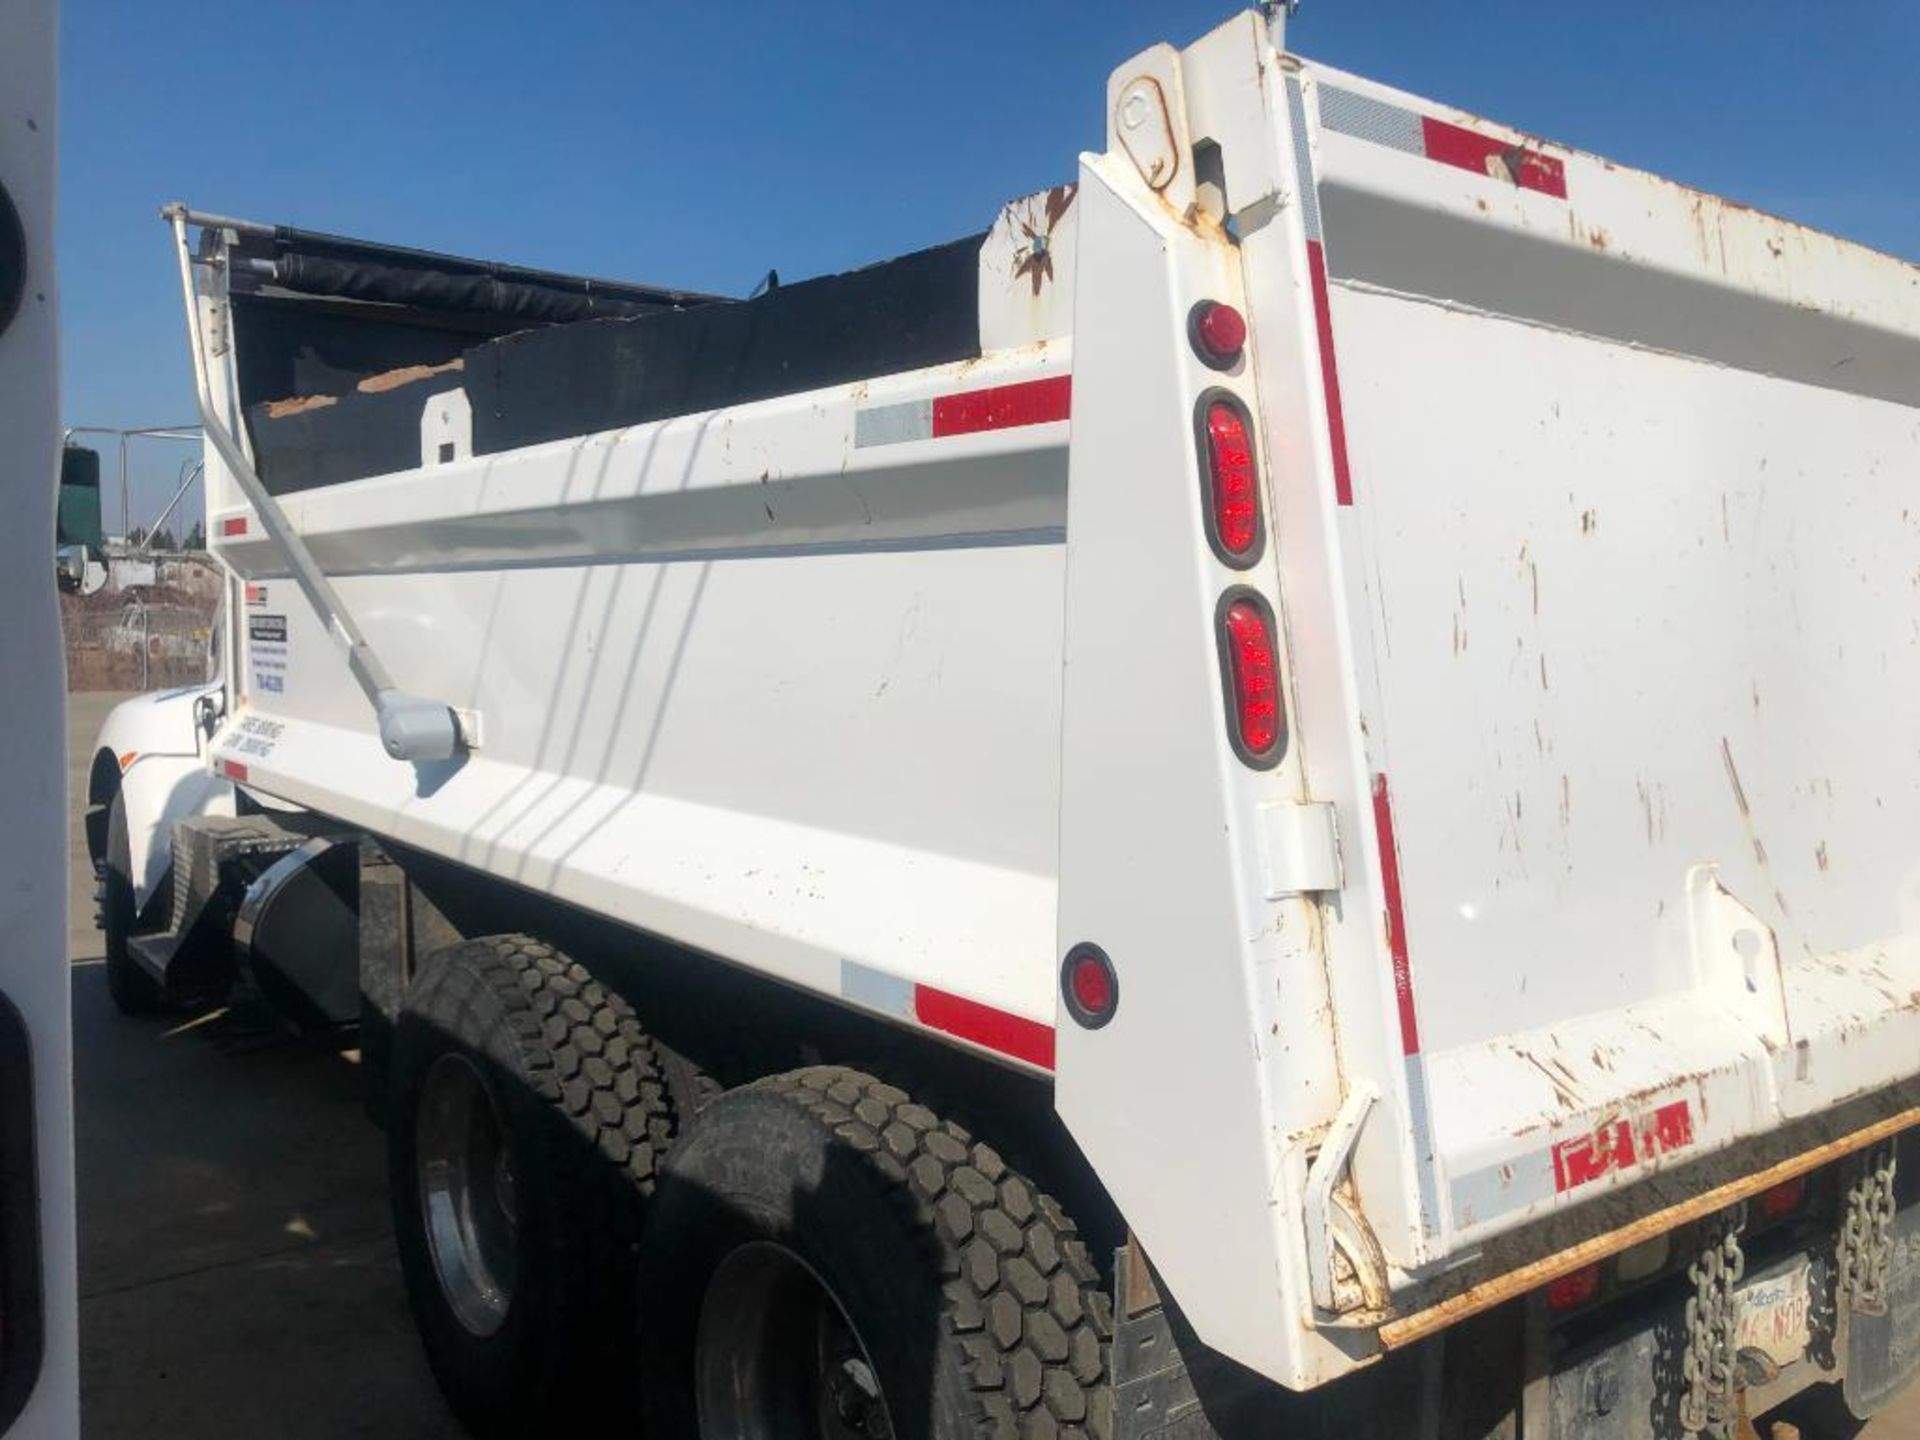 2018 Kenworth T370 End Dump Gravel Truck, 71,840km Showing, VIN #: 2NKHLJ9X2JM990989 - Image 4 of 31